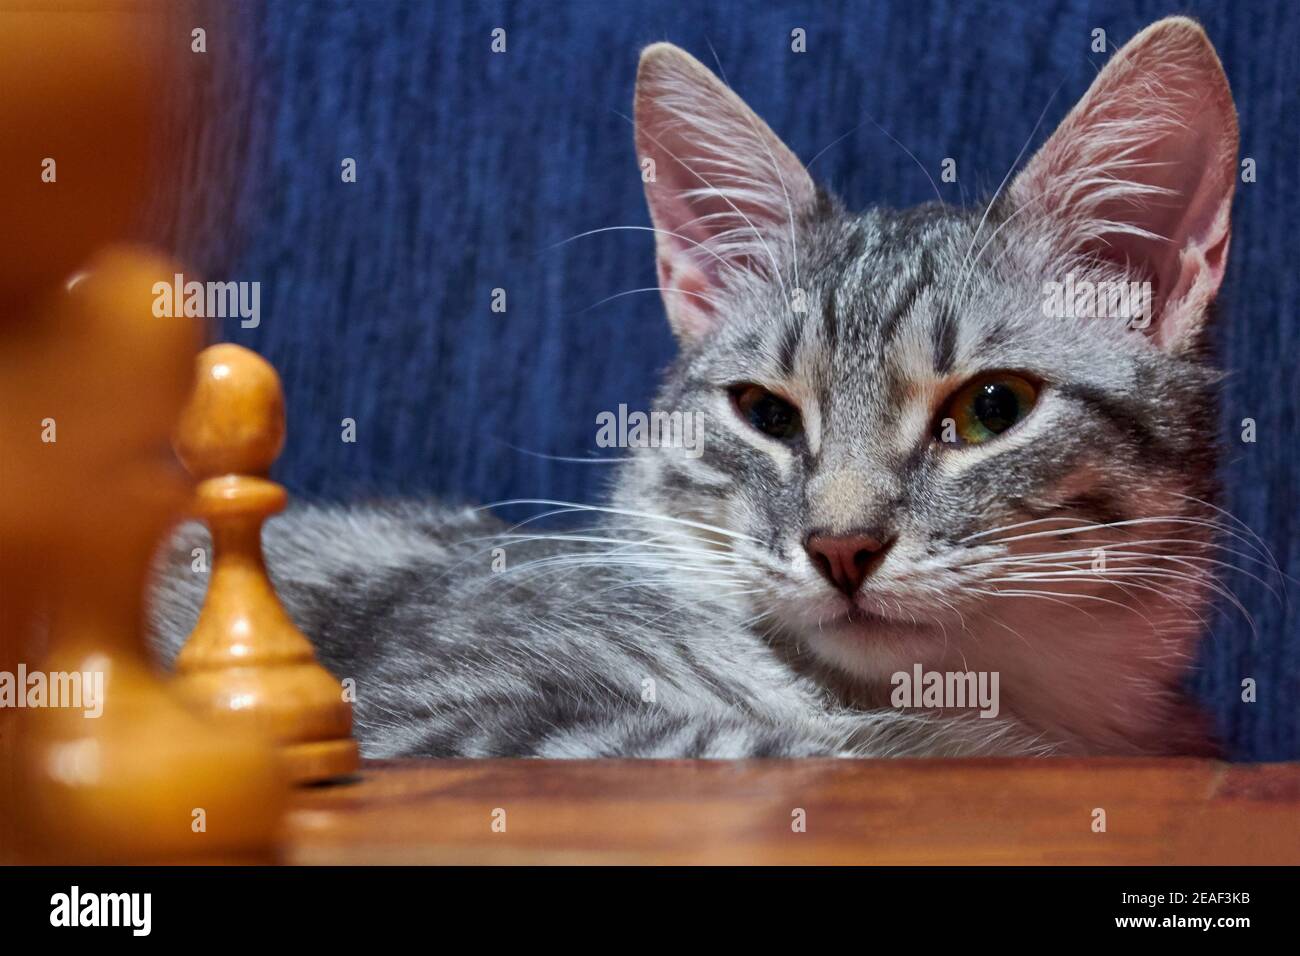 Graue Katze, die Schach spielt. Weiße und schwarze Schachfiguren auf dem Brett in der Nähe des Haustieres. Katze schaut auf das Schachbrett. Stockfoto